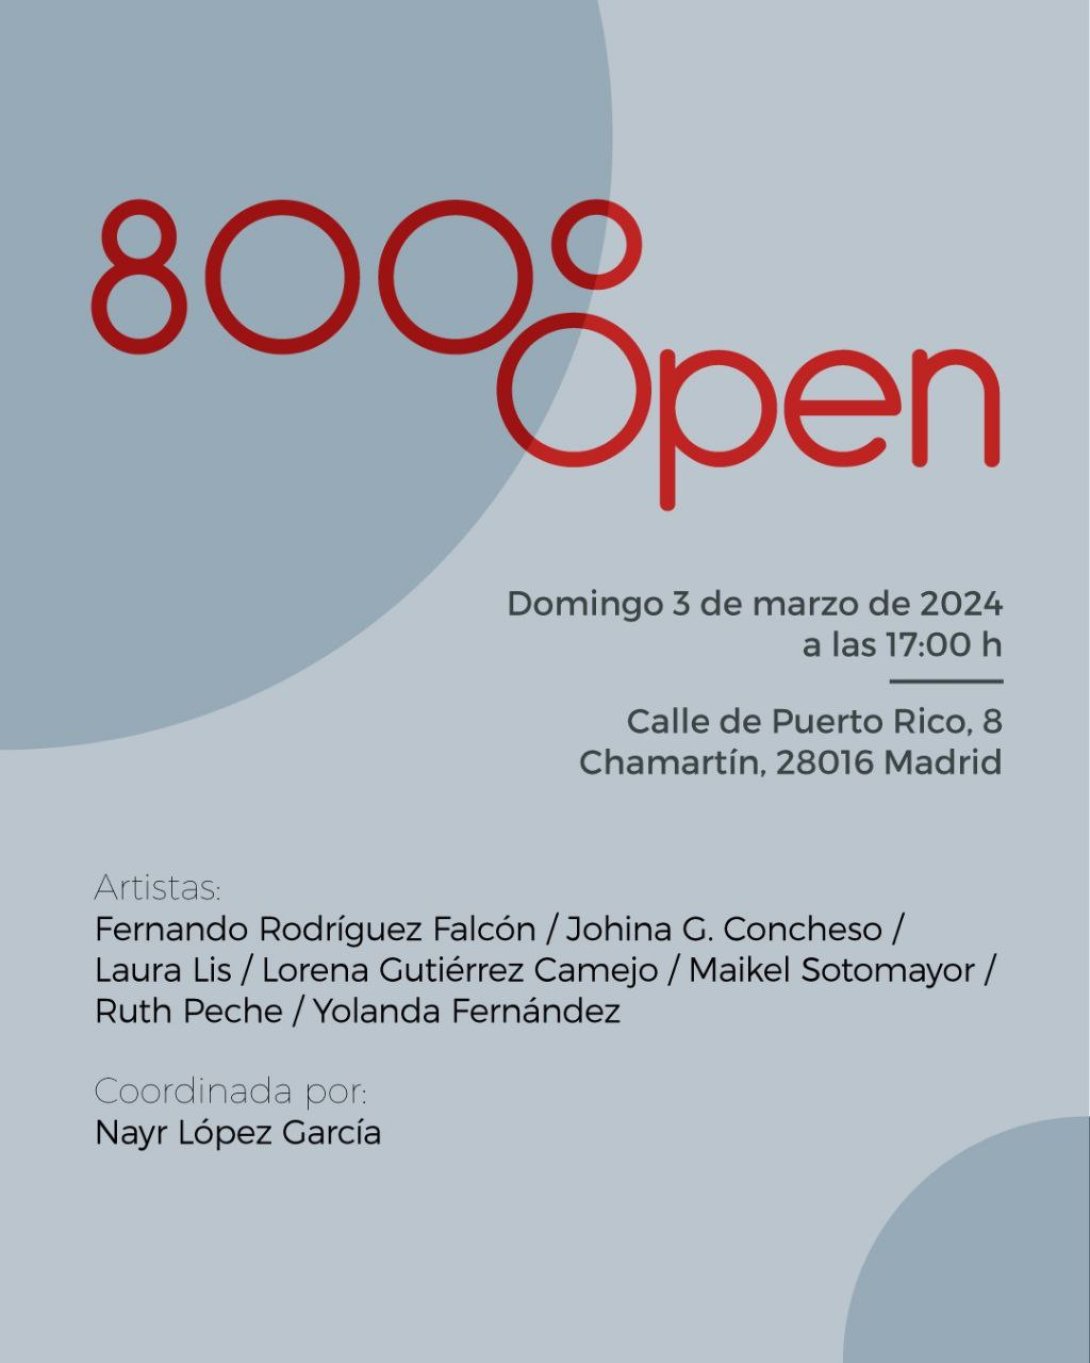 Cartel de la exposición "800 °C Open"